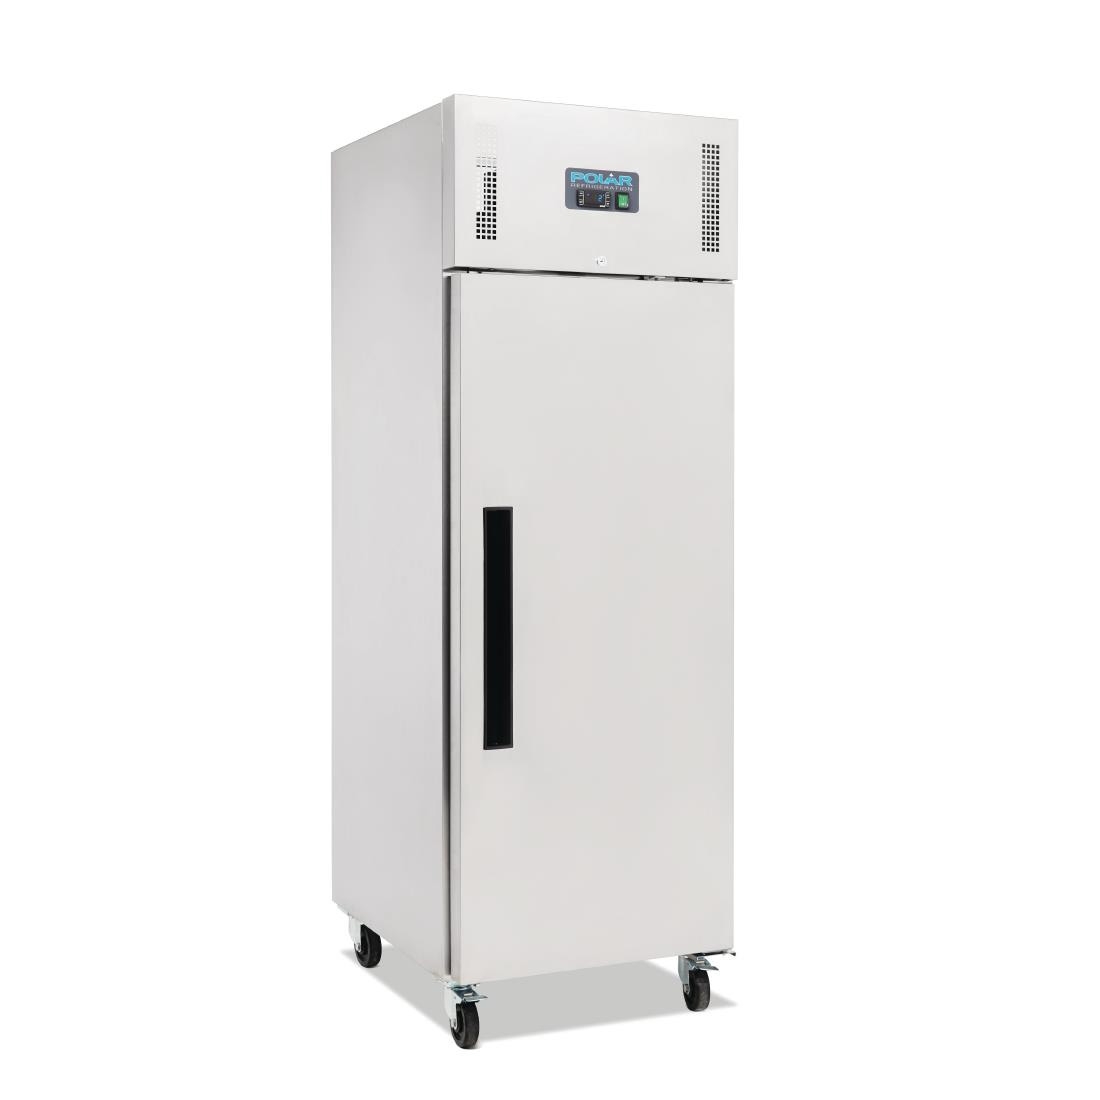 Айс бюро фризер 600. Холодильник Fridge 600. Холодильник Полар. Polar Refrigerator 1200 литре. Low cold